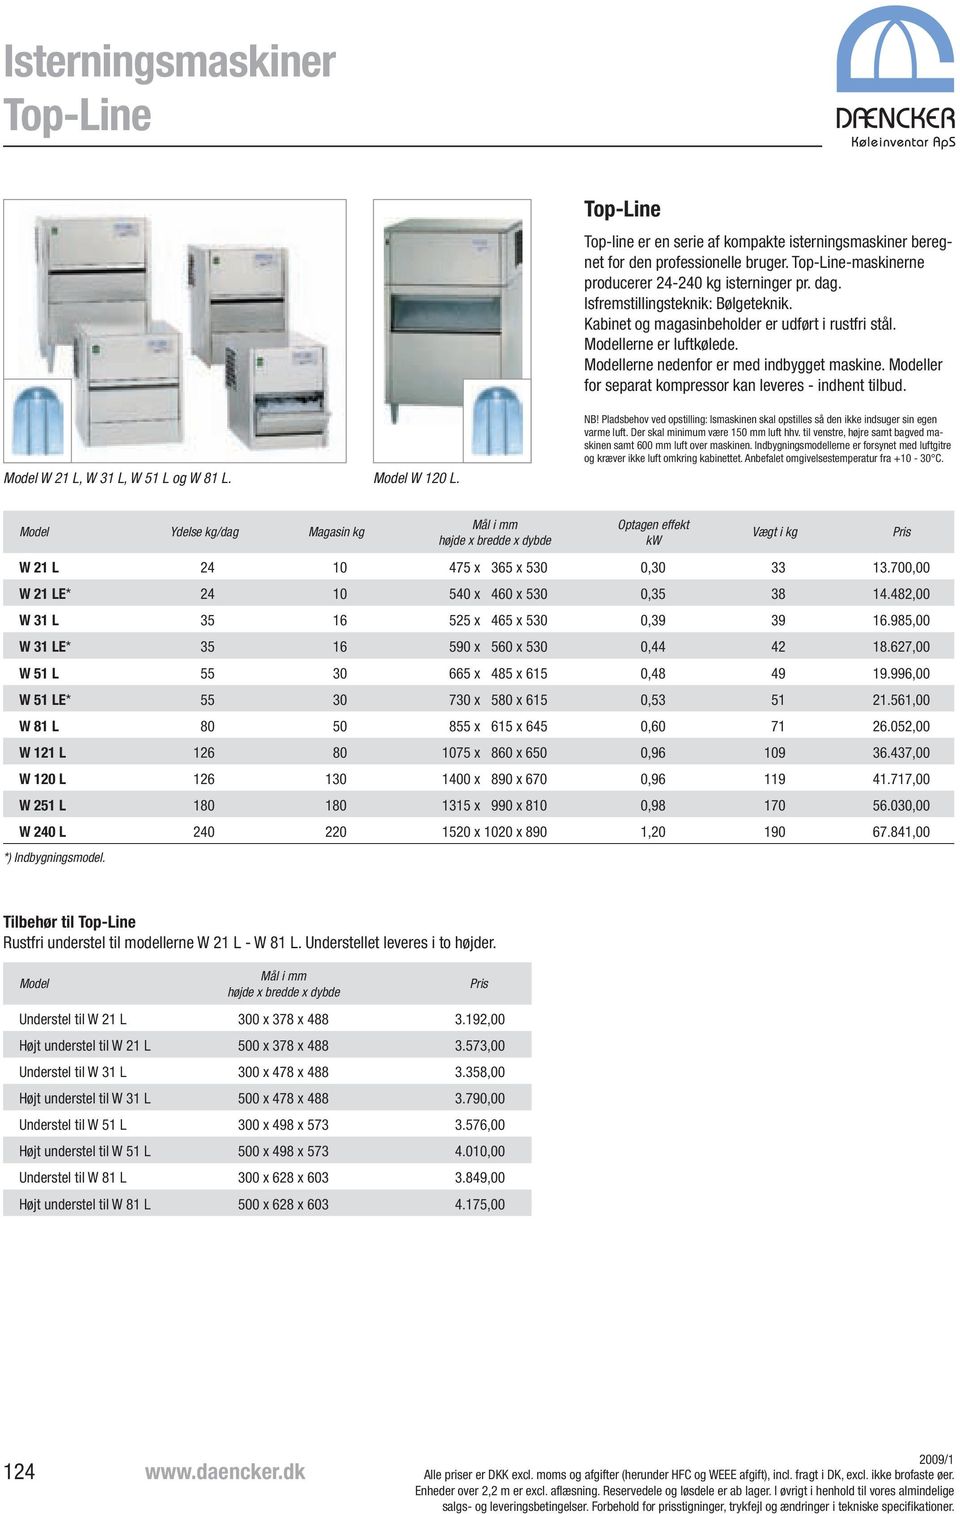 Modeller for separat kompressor kan leveres - indhent tilbud. Model W 21 L, W 31 L, W 51 L og W 81 L. Model W 120 L. NB!